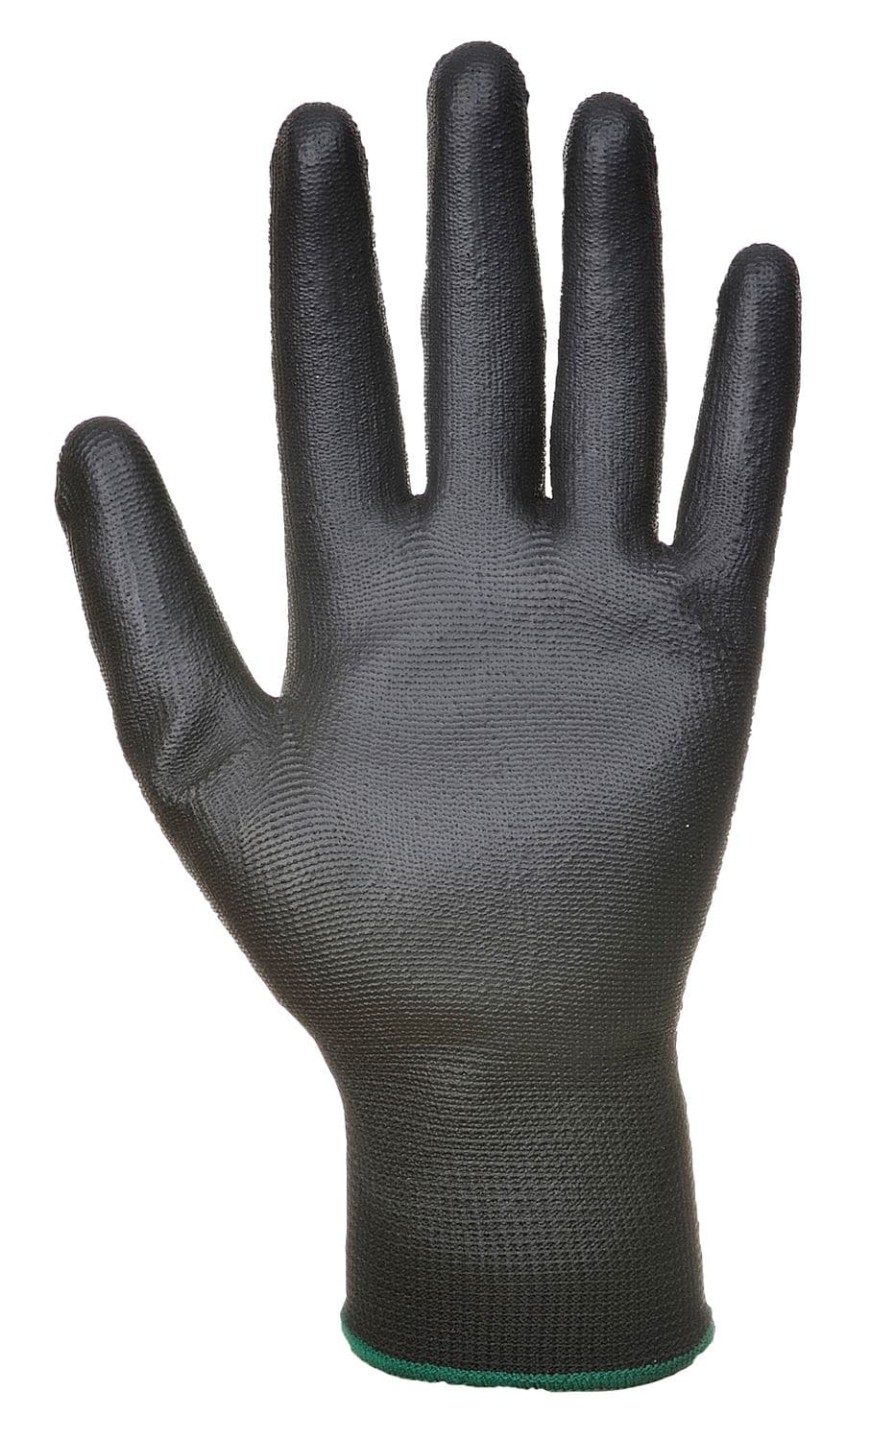 Portwest PU Palm Glove (480 pairs)